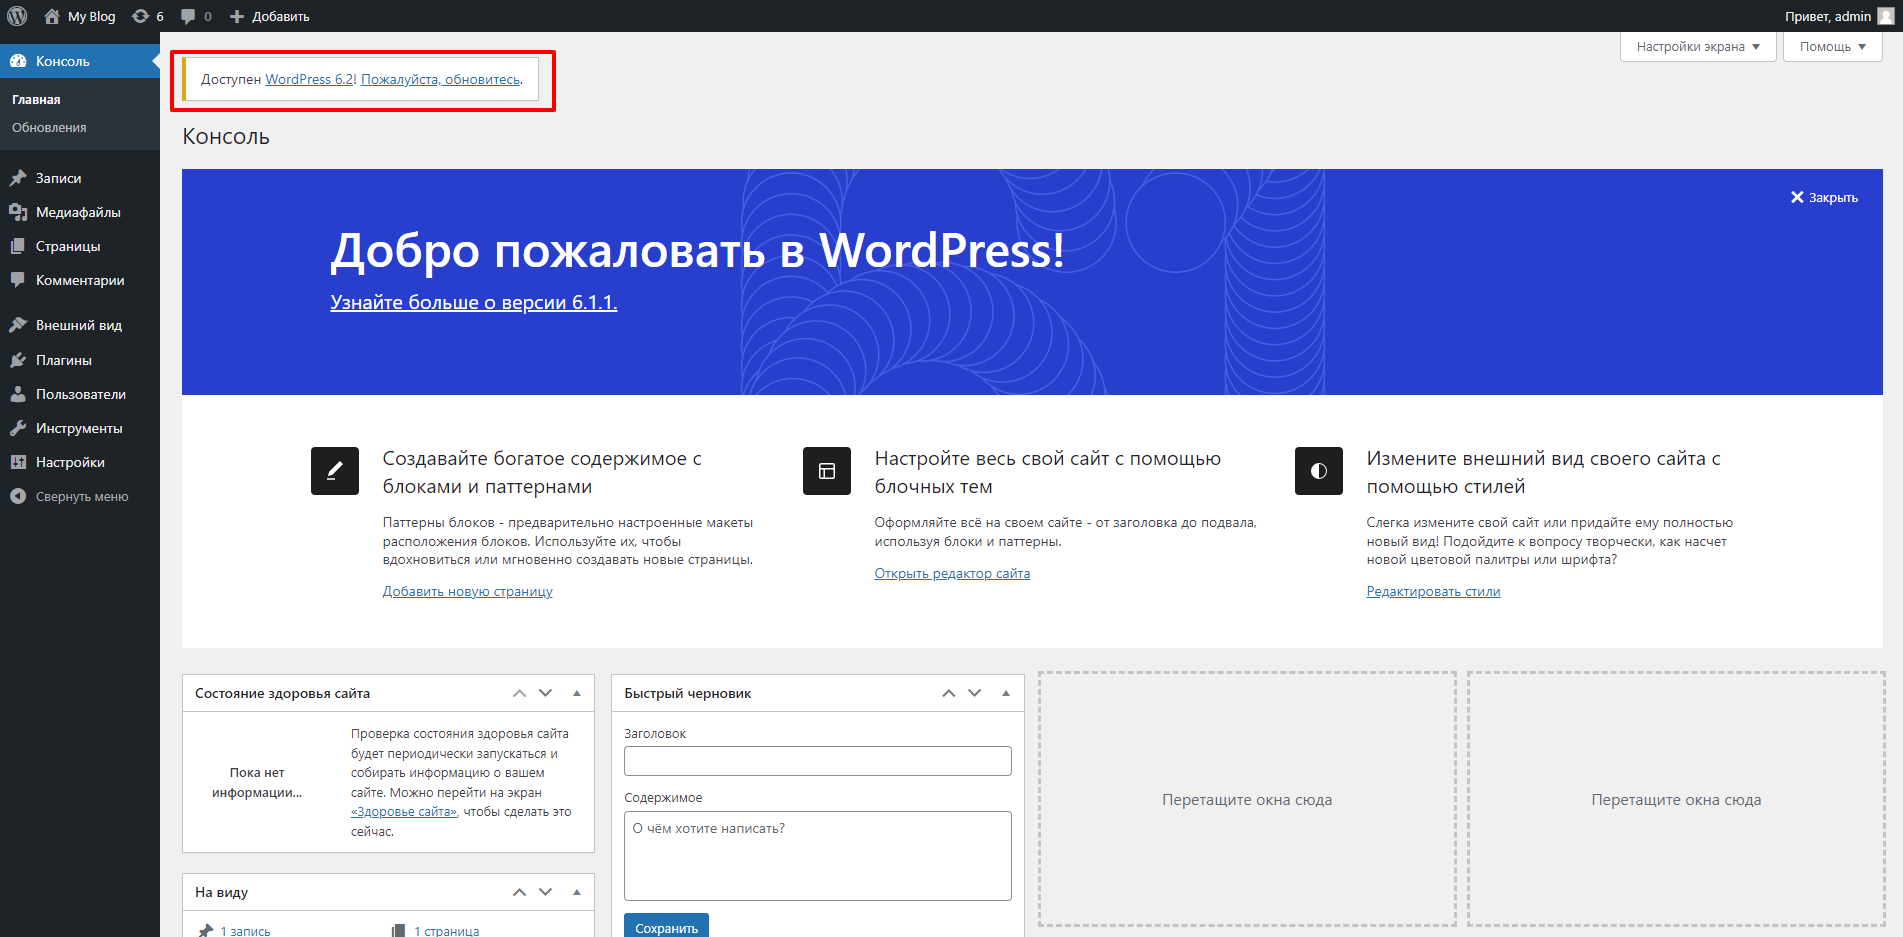 Главный экран админки Wordpress